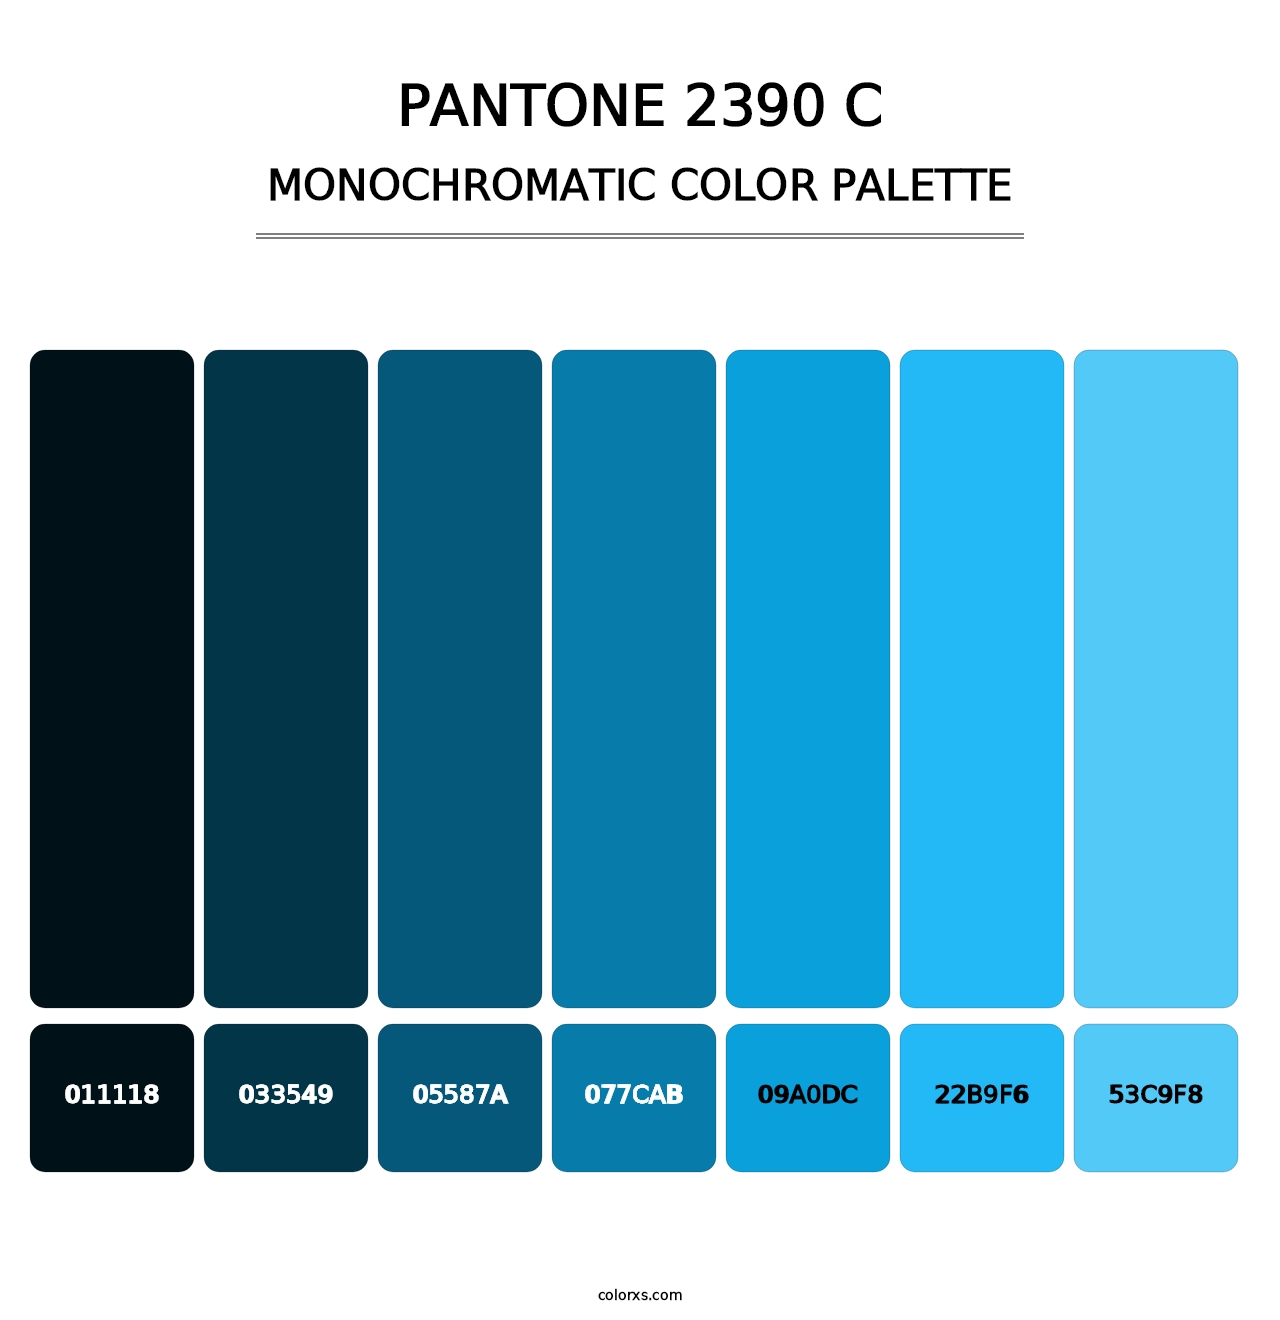 PANTONE 2390 C - Monochromatic Color Palette